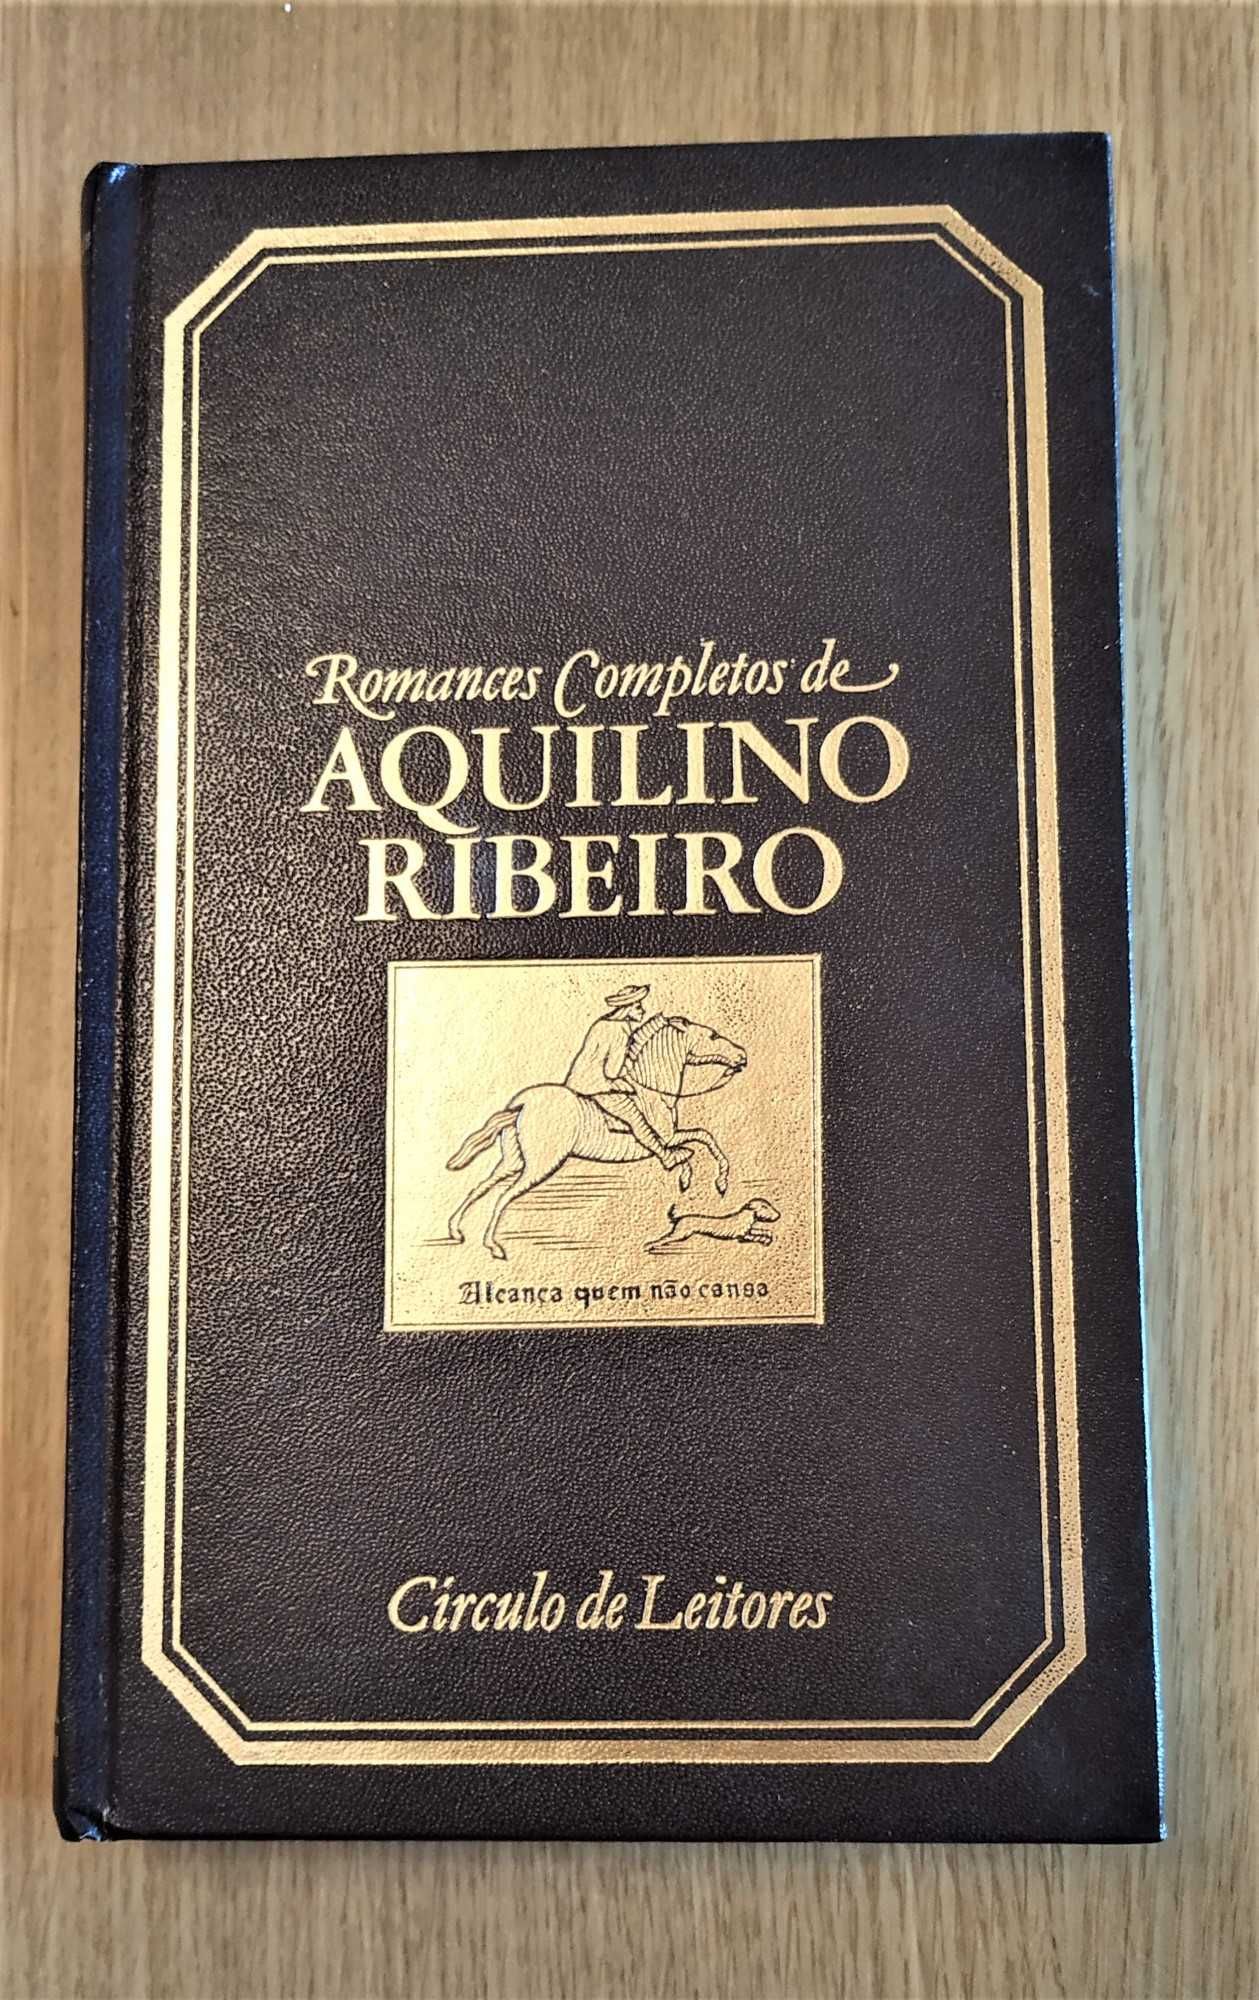 Romances Completos de Aquilino Ribeiro